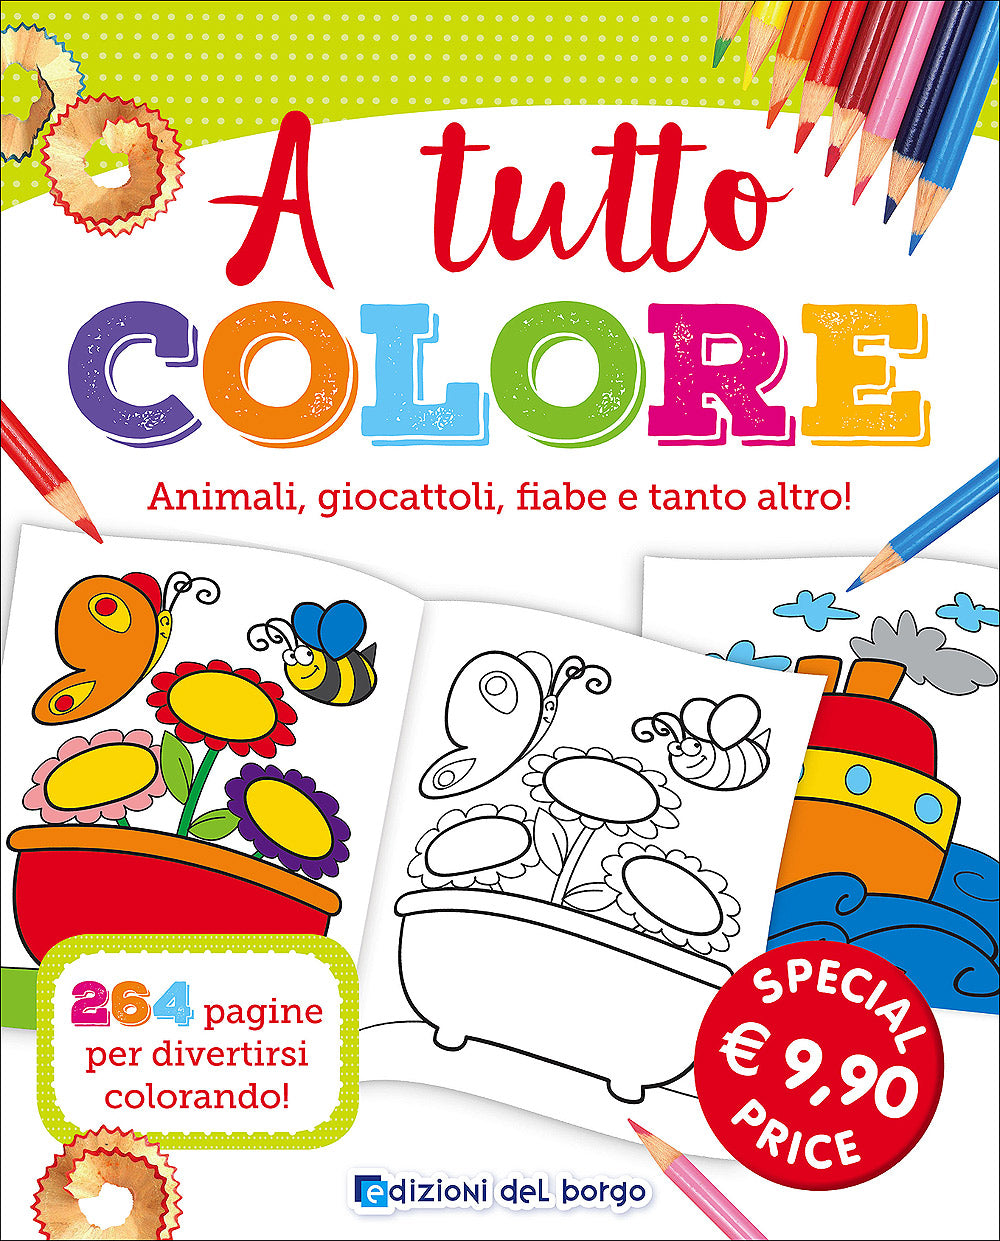 A tutto colore. Animali, giocattoli, fiabe e tanto altro! 264 pagine per divertirsi colorando!